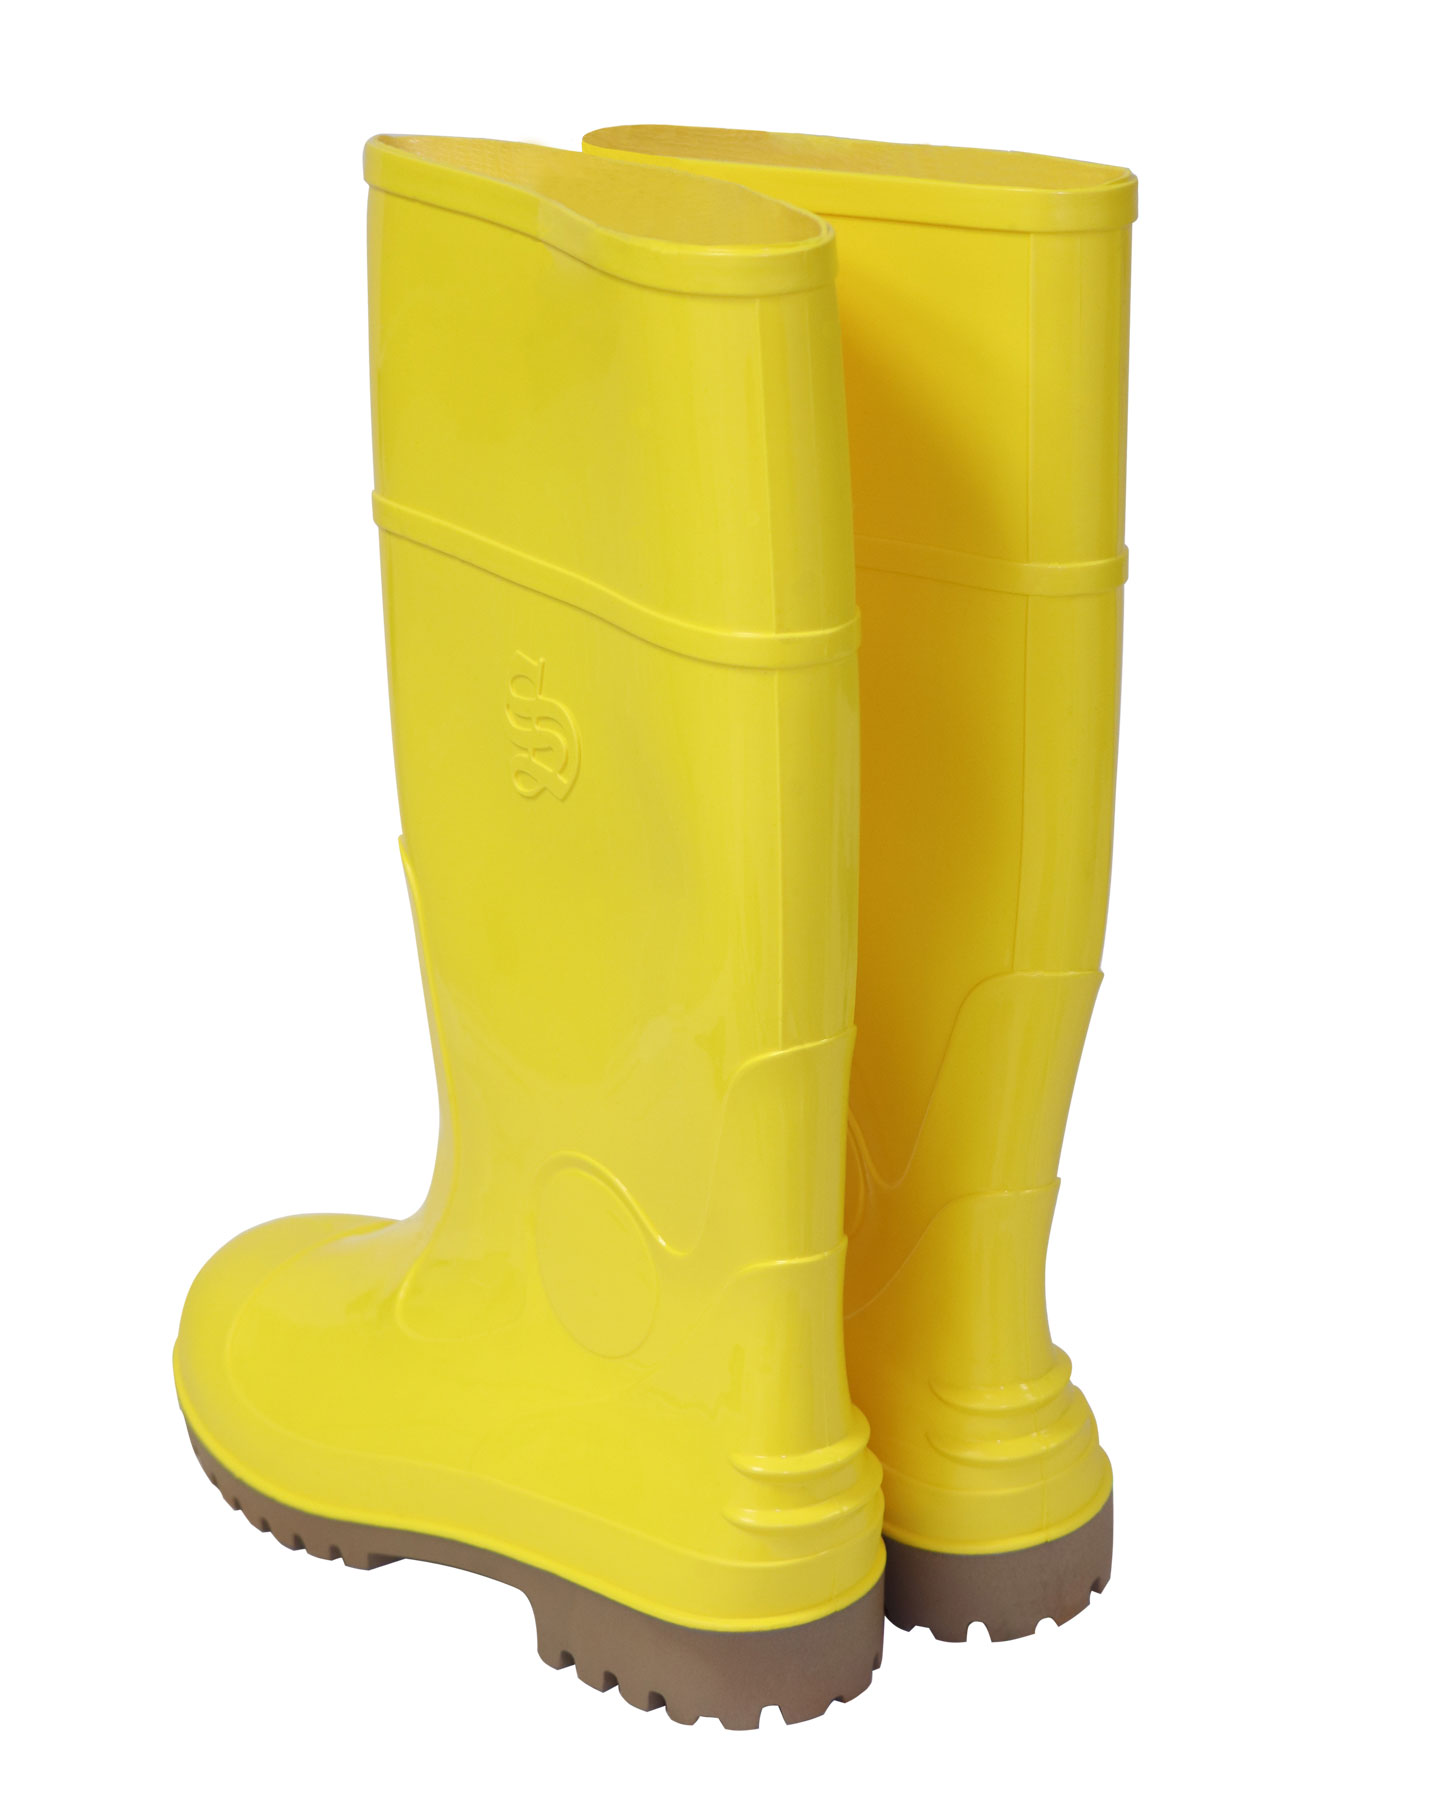 Сапоги ПВХ мужские желтые (НМС КЩС, мет.подносок, высота 38см)